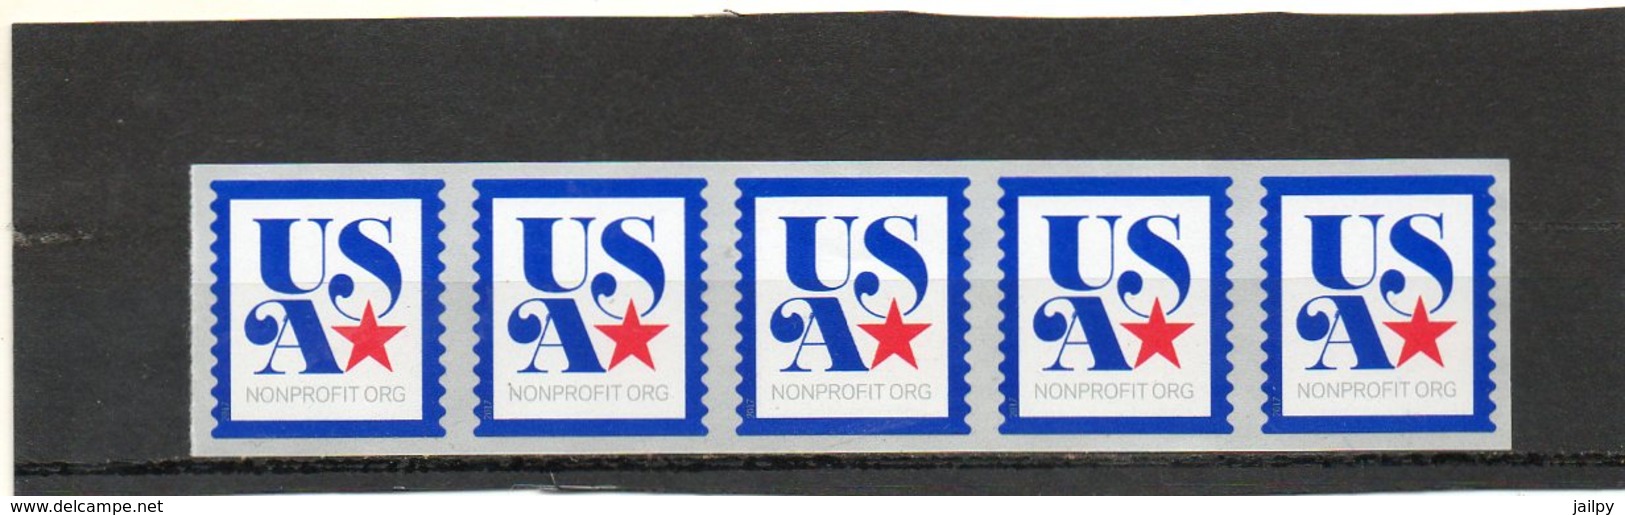 ETATS-UNIS    Bande De 5 Timbres   Non Profit      2017   Patriotic  (3K)  Sans N°   Neufs - Unused Stamps